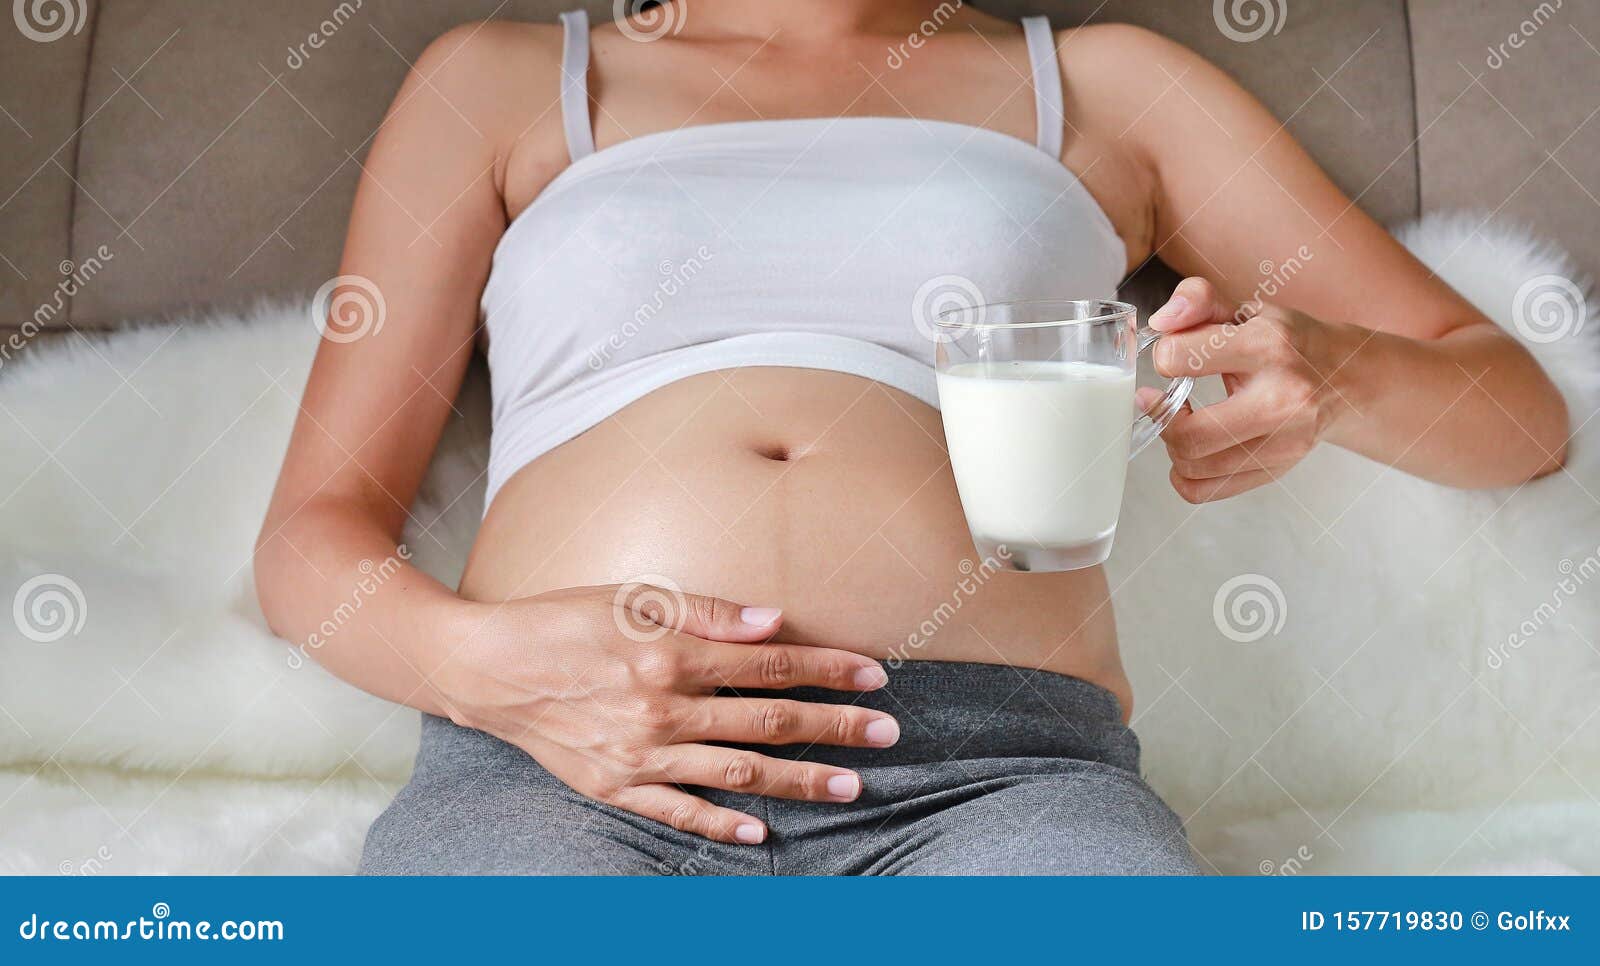 Drinking Her Own Milk